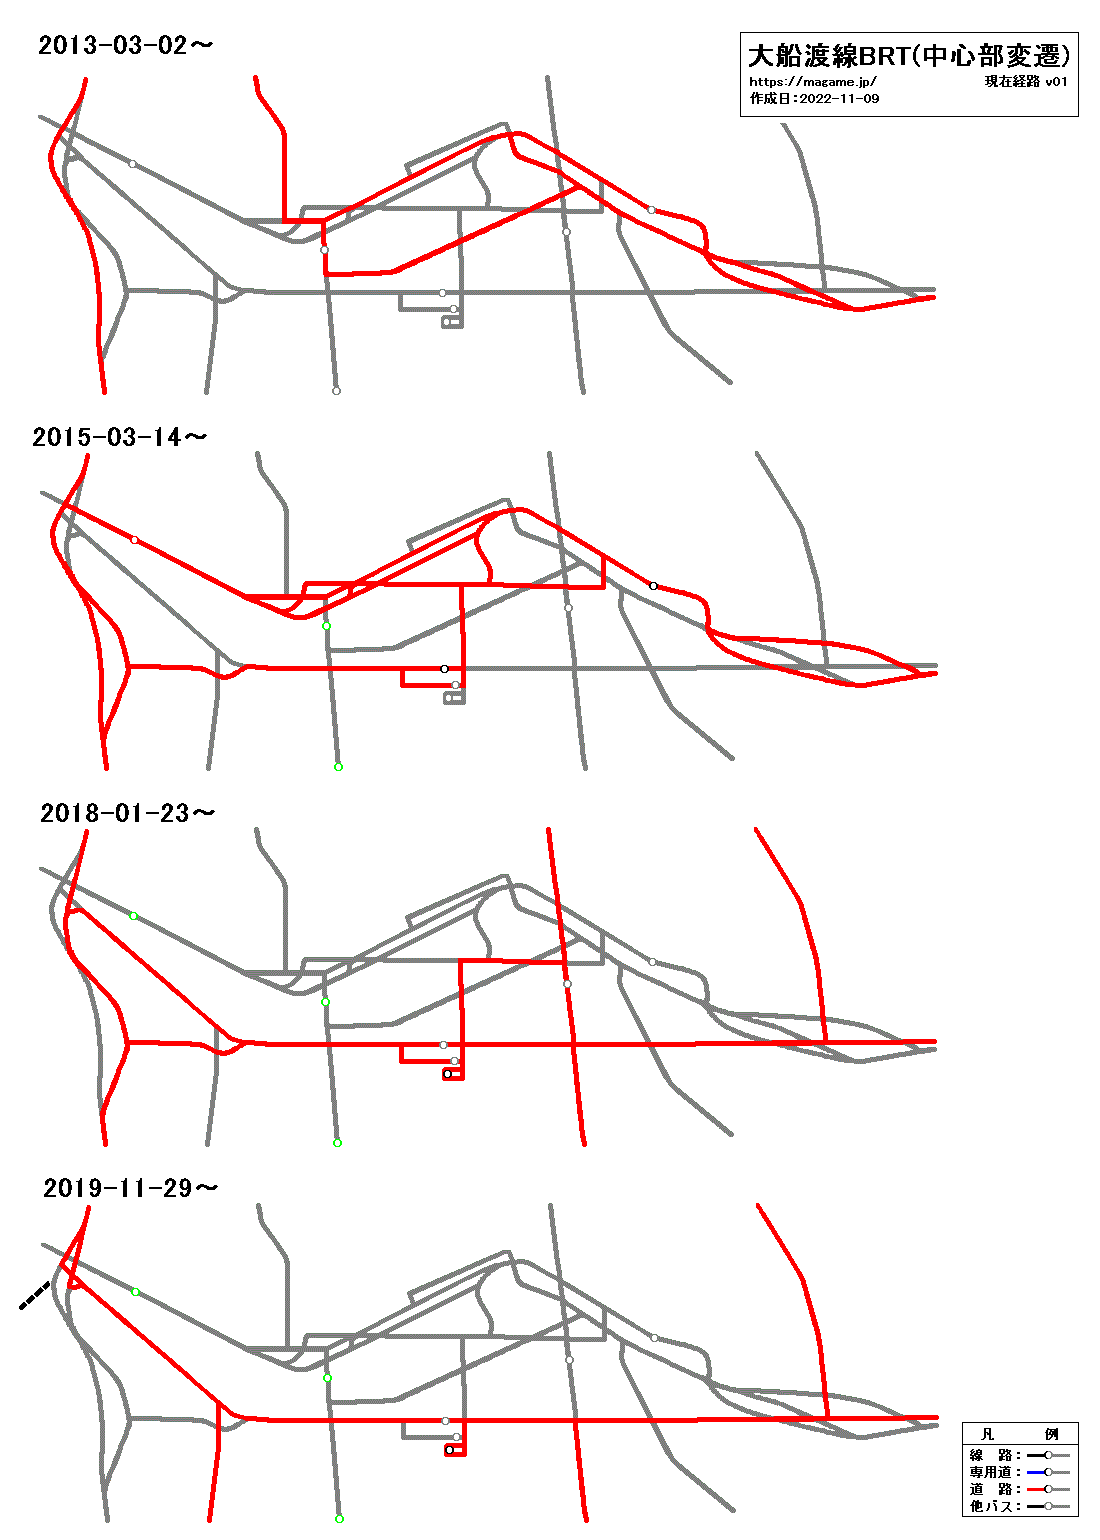 大船渡線BRT(中心部変遷)路線図